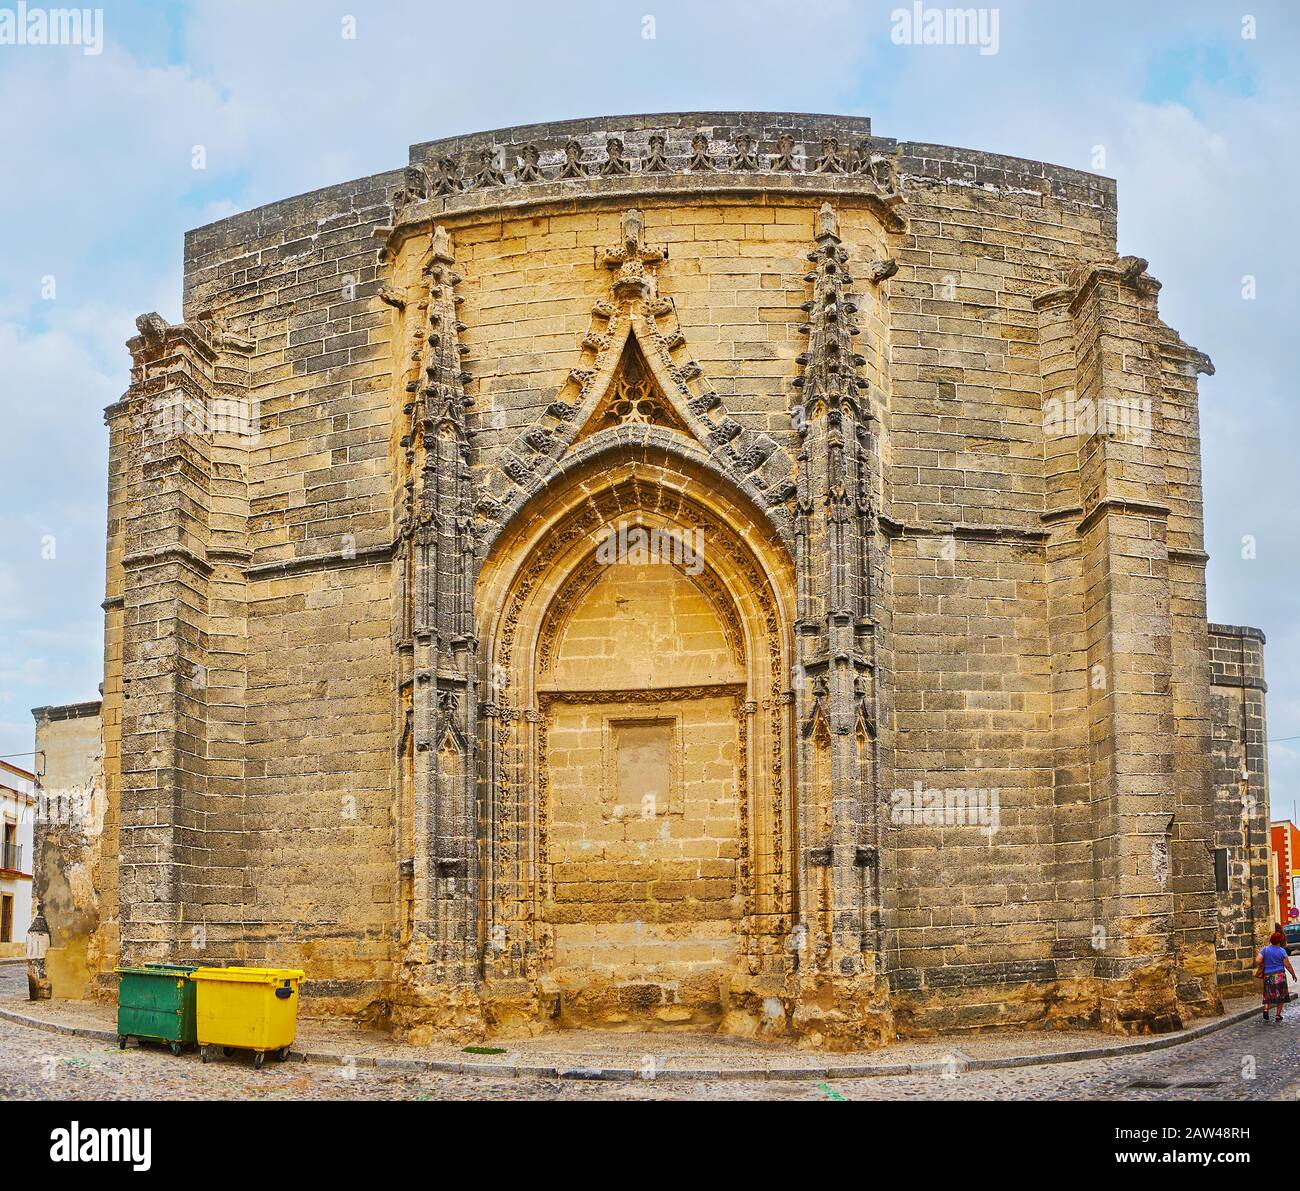 La porta di accesso in mattoni della chiesa medievale gotica di San Mateo (San Matteo), decorata con ghirlande di pietra scolpita, rilievi e torri, Jerez, Spagna Foto Stock